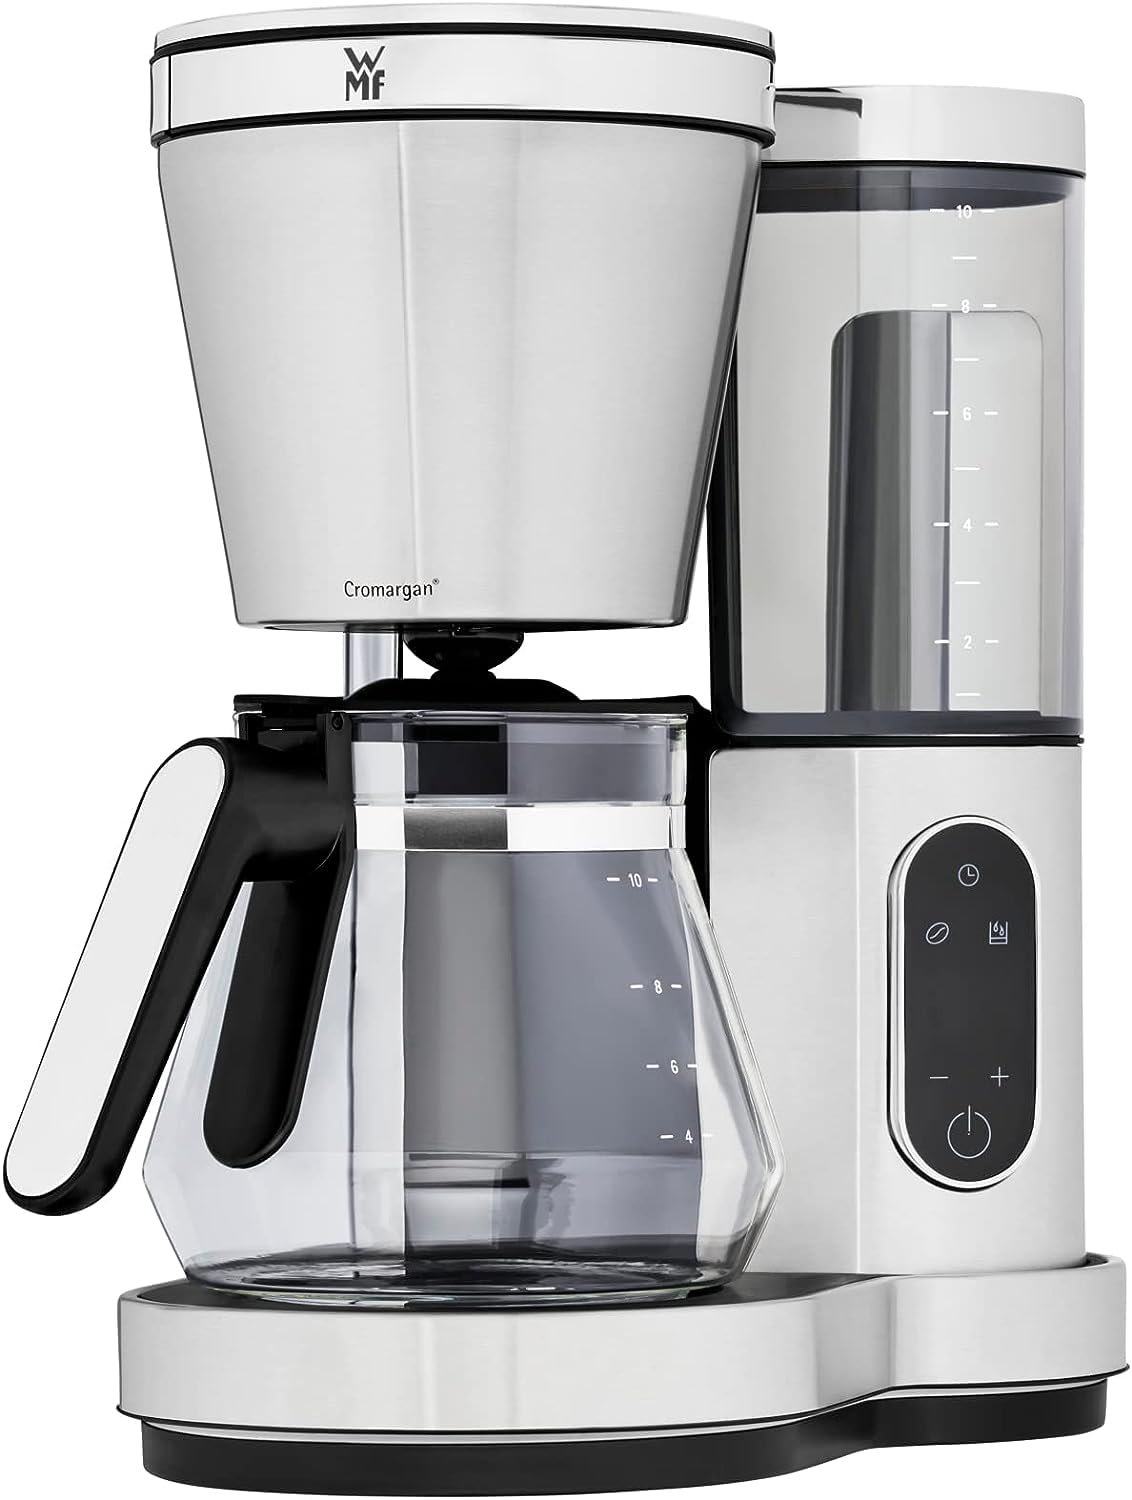 WMF Lono Aroma Filterkaffeemaschine (1000 W, mit Glaskanne, Filterkaffee, 10 Tassen, Schwenkfilter, Warmhalteplatte, abnehmbarer Wassertank, Abschaltautomatik)